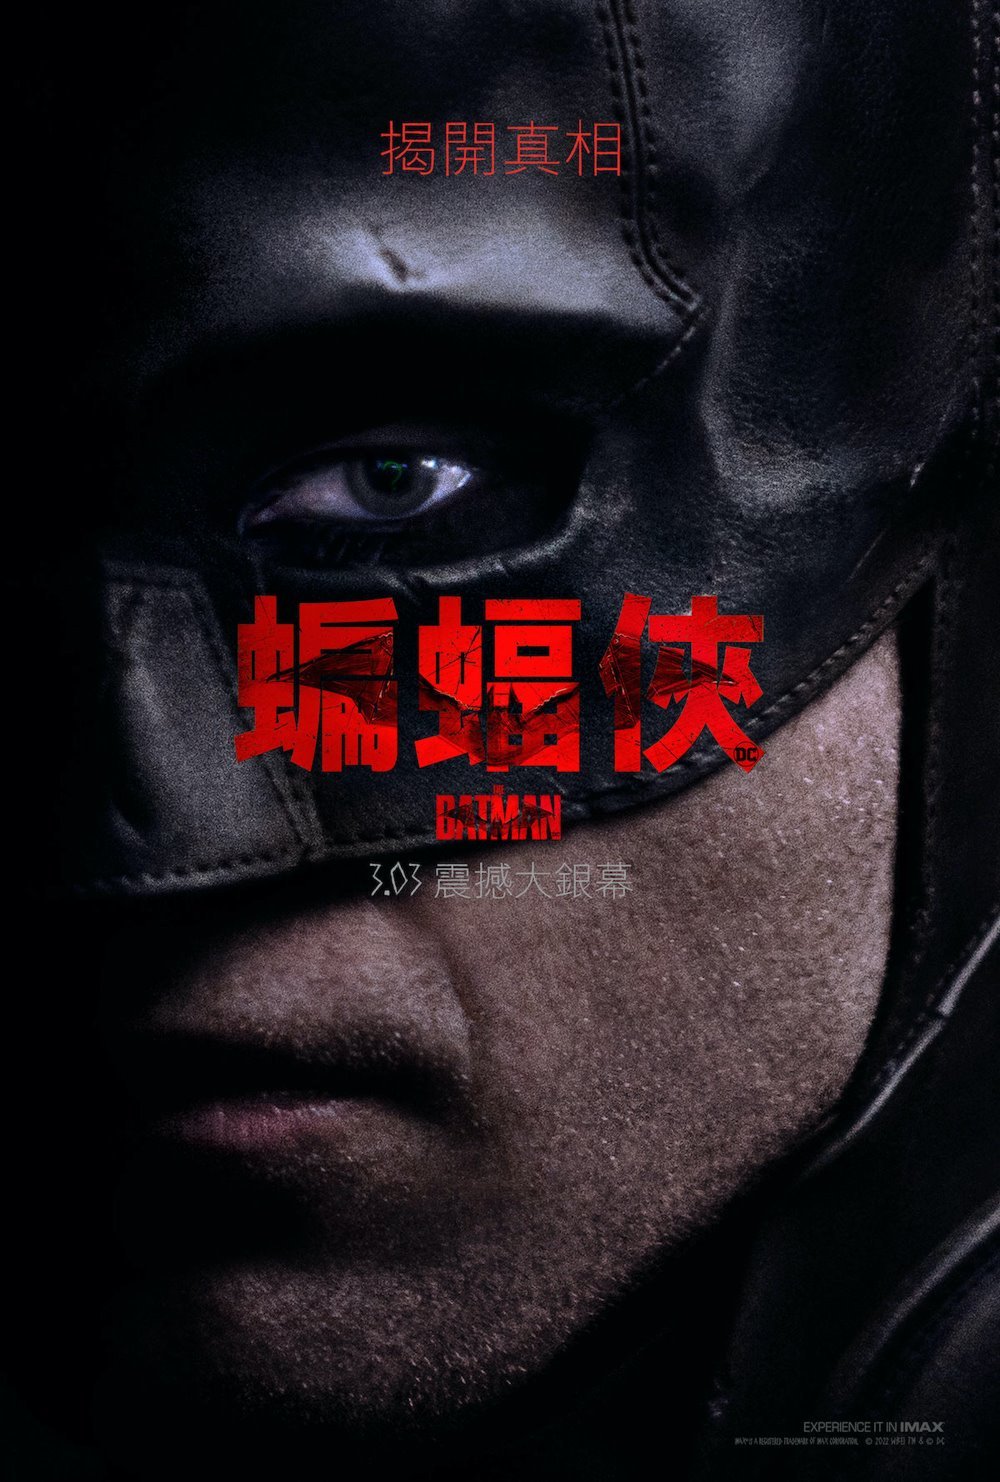 蝙蝠俠 (D-BOX 全景聲版)電影圖片 - HK_CLOSEUP_1642642126.jpg